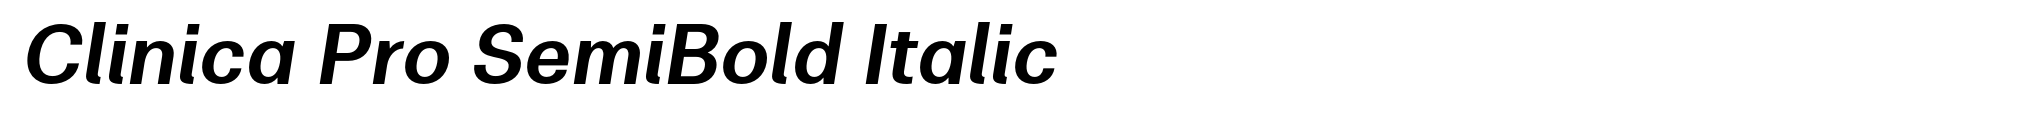 Clinica Pro SemiBold Italic image